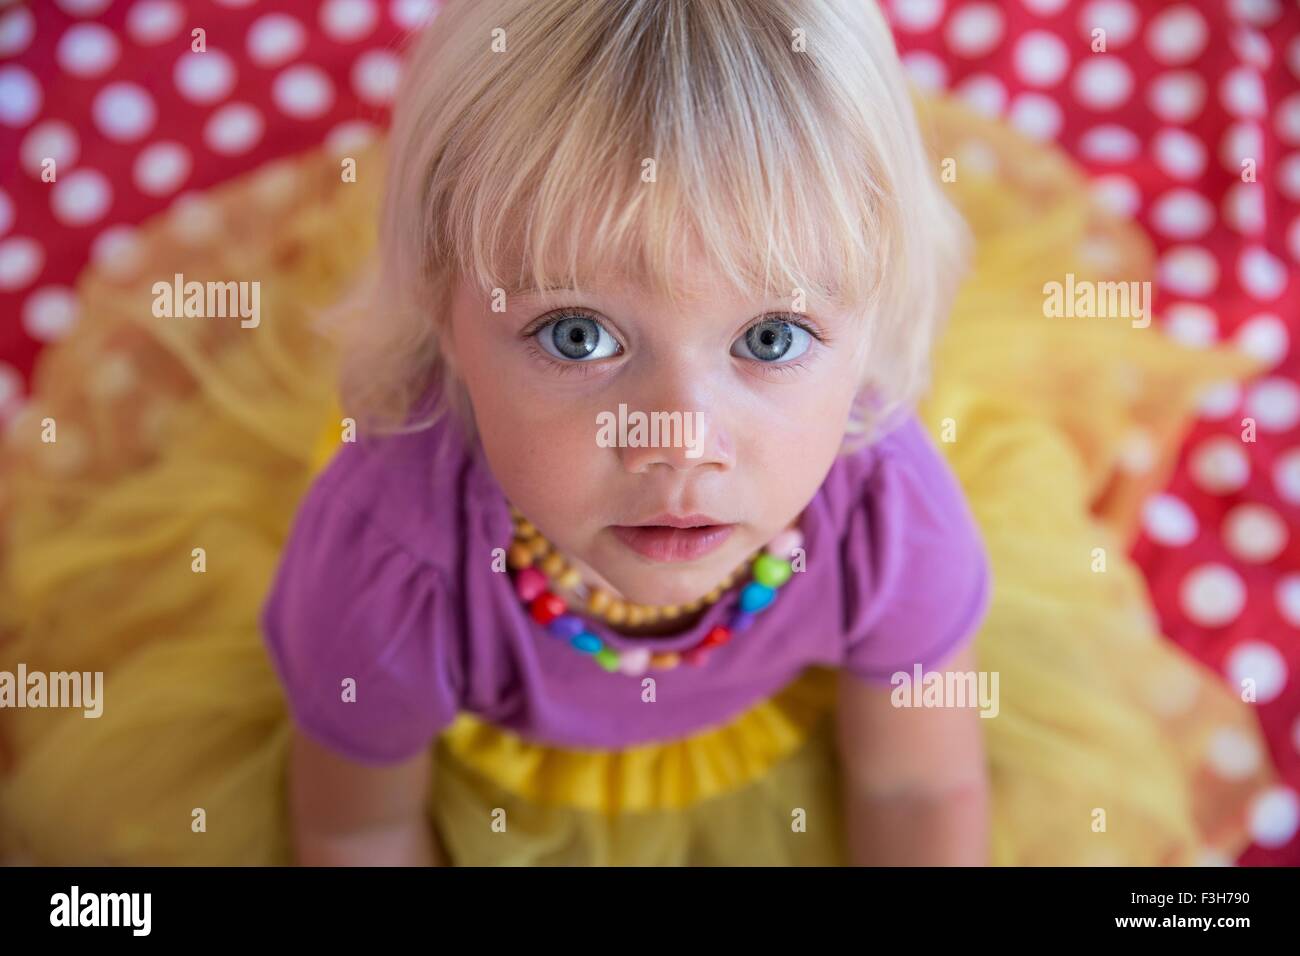 Sobrecarga retrato de mujer niño con ojos azules y pelo rubio Foto de stock